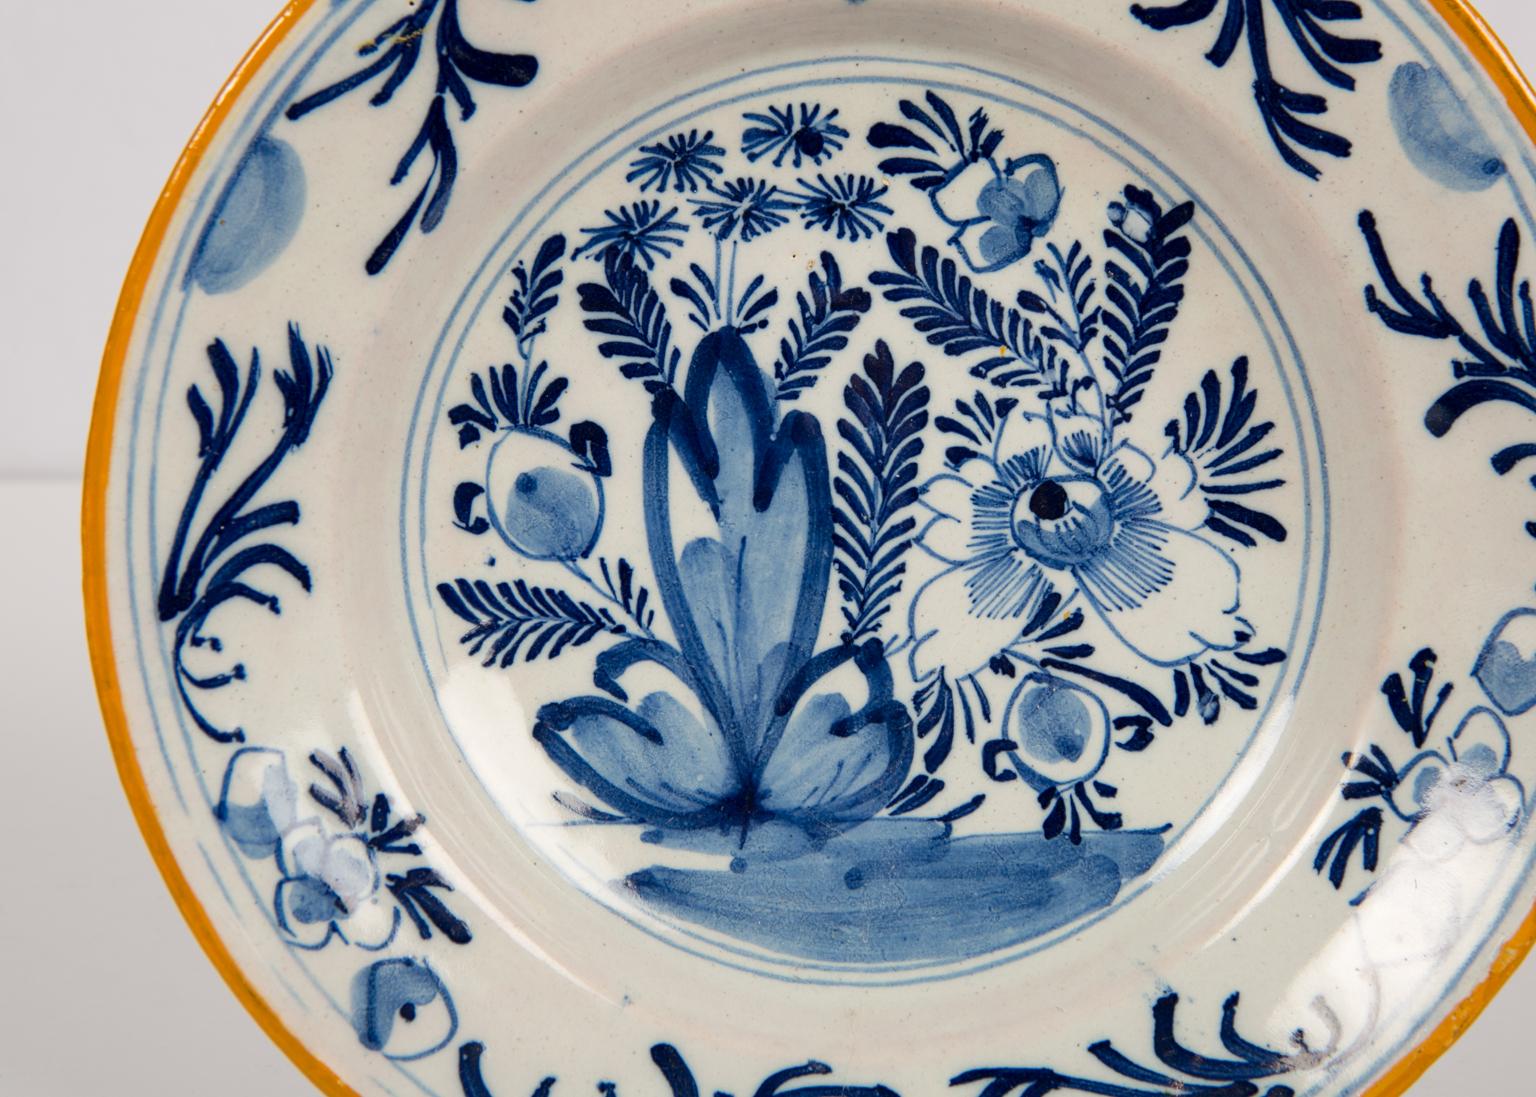 Wir freuen uns, diese Gruppe von drei blau-weiß bemalten Delft-Tellern mit senfgelben Rändern anbieten zu können.
Jede Schale zeigt eine blumenreiche Gartenszene. Wir sehen eine große Pfingstrose und andere Blumen.
Der Rand ist mit Blumen und Ranken